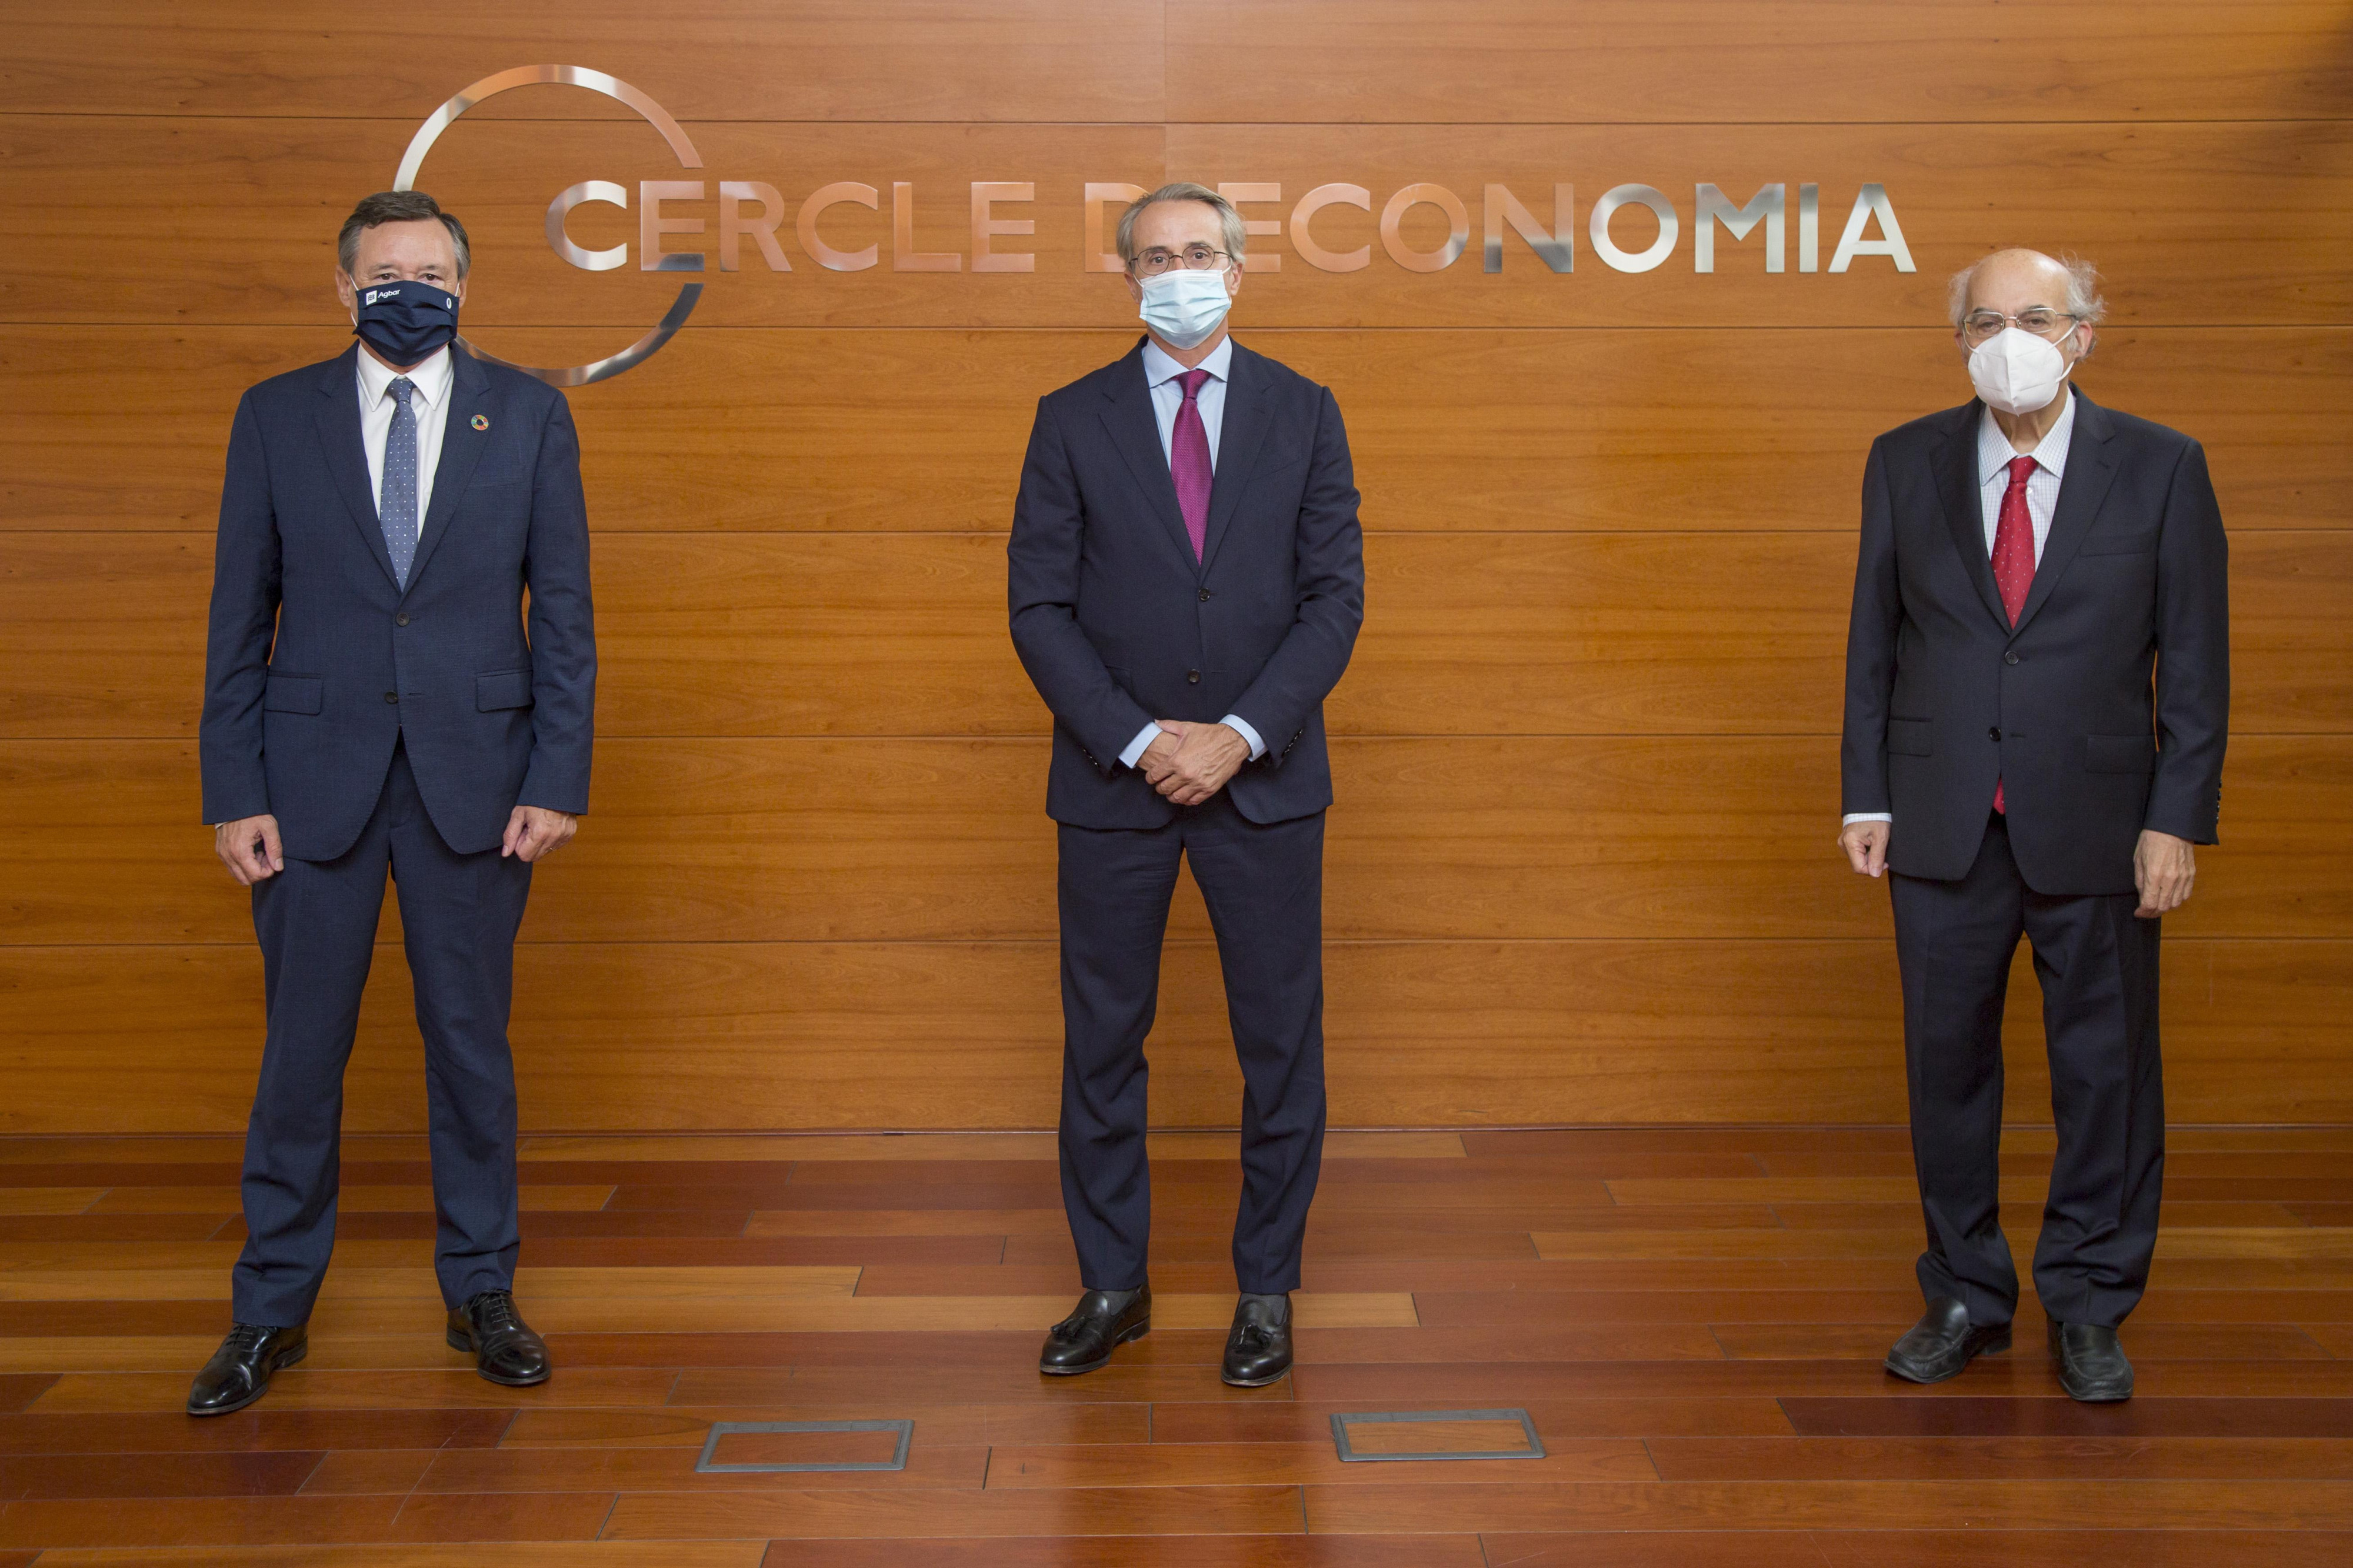 Ángel Simón, Javier Faus y Mas-Colell, en el Círculo de Economía / CdE